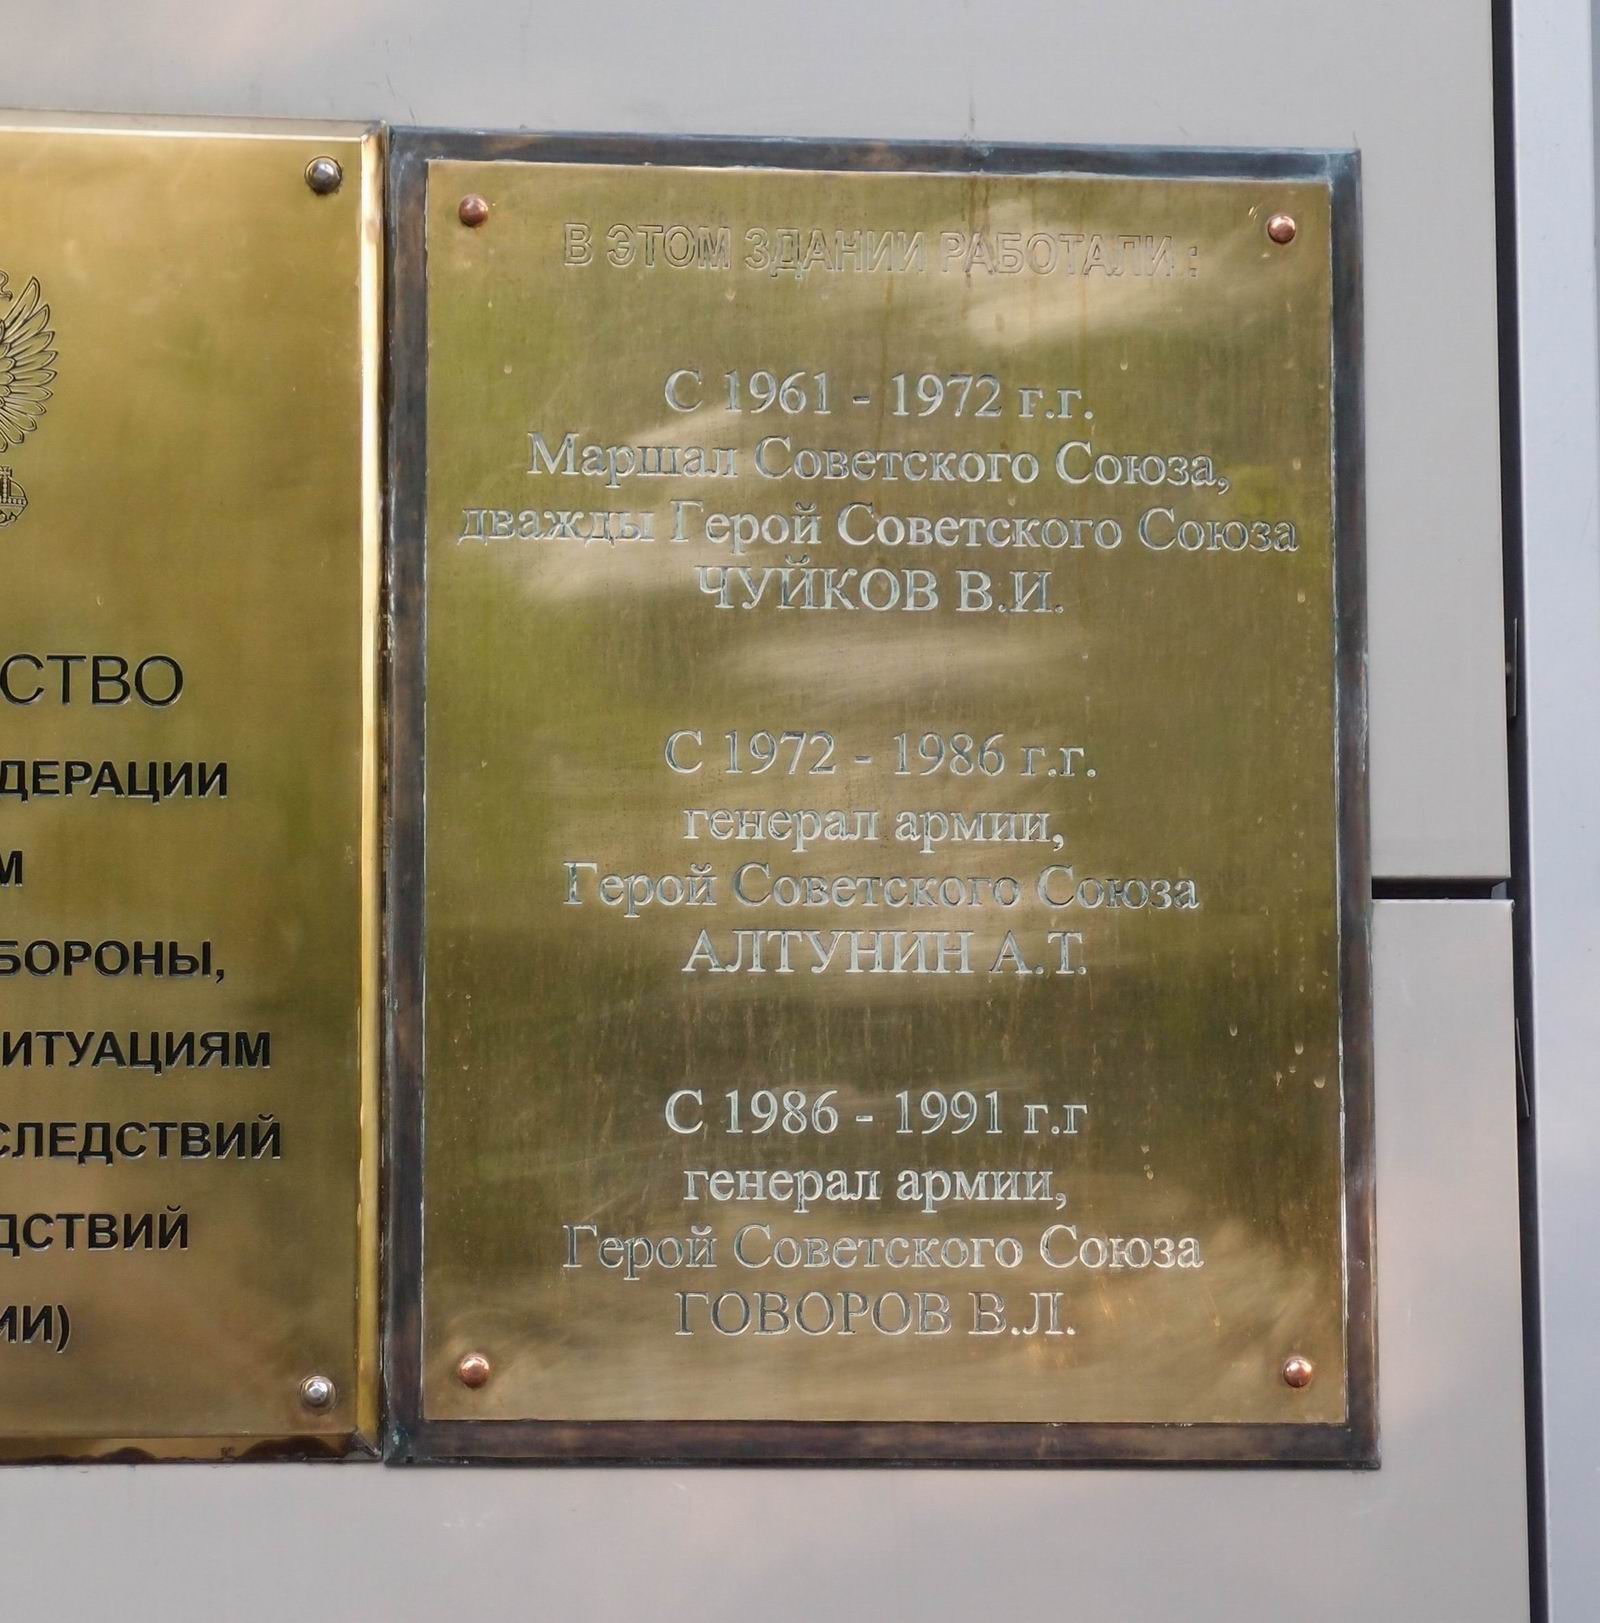 Мемориальная доска начальникам Гражданской обороны СССР, на улице Ватутина, дом 1.